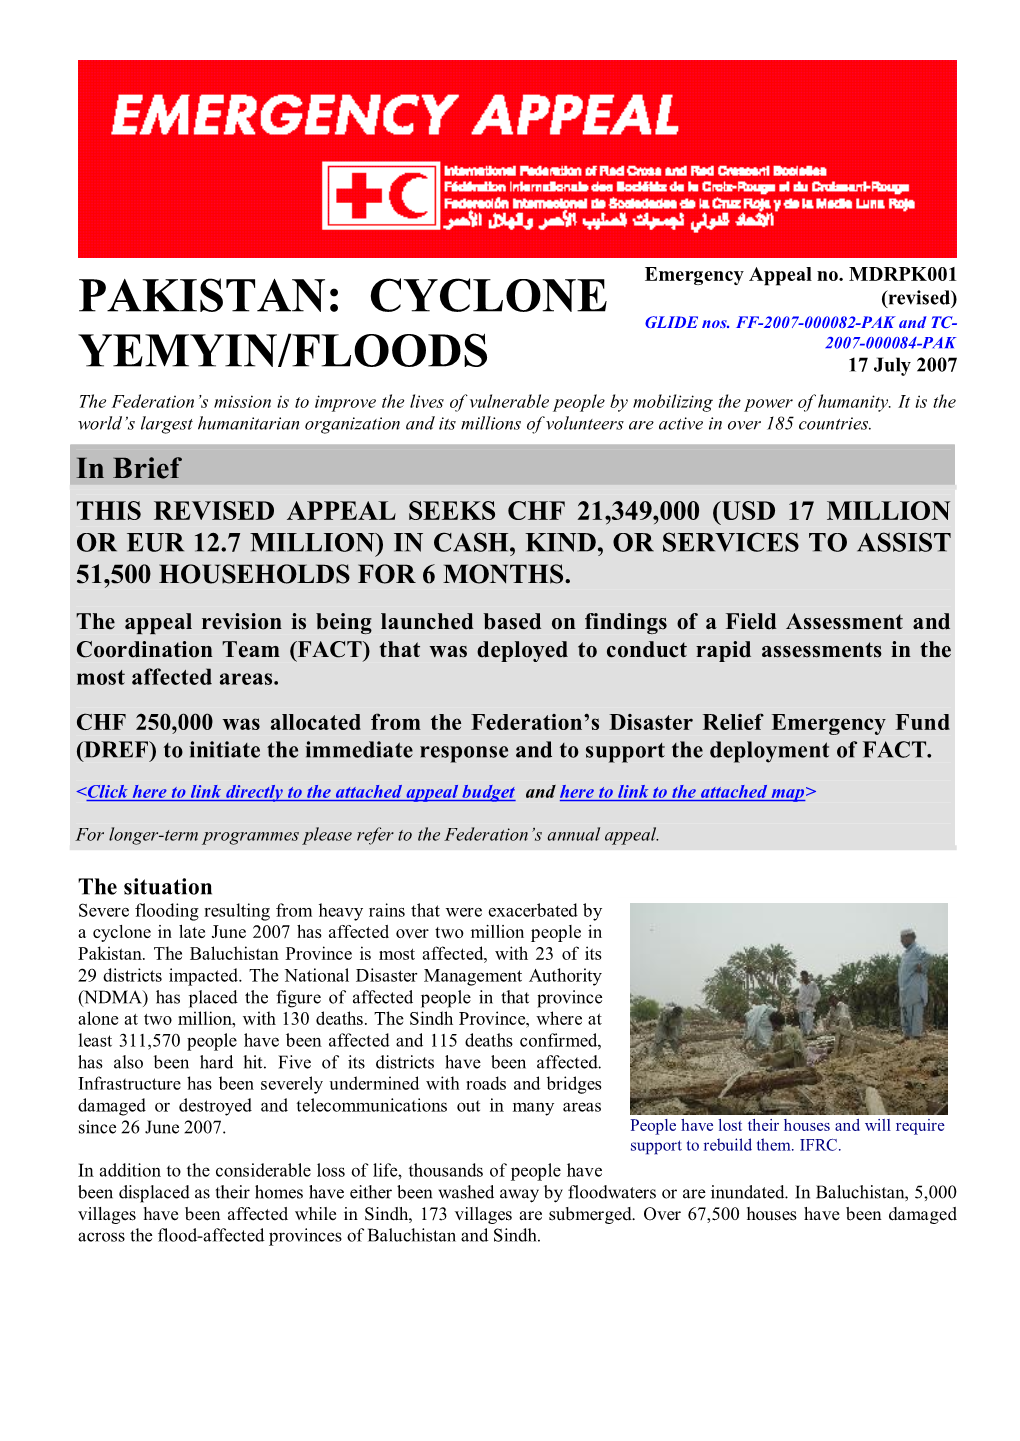 Pakistan: Cyclone Yemyin/Floods